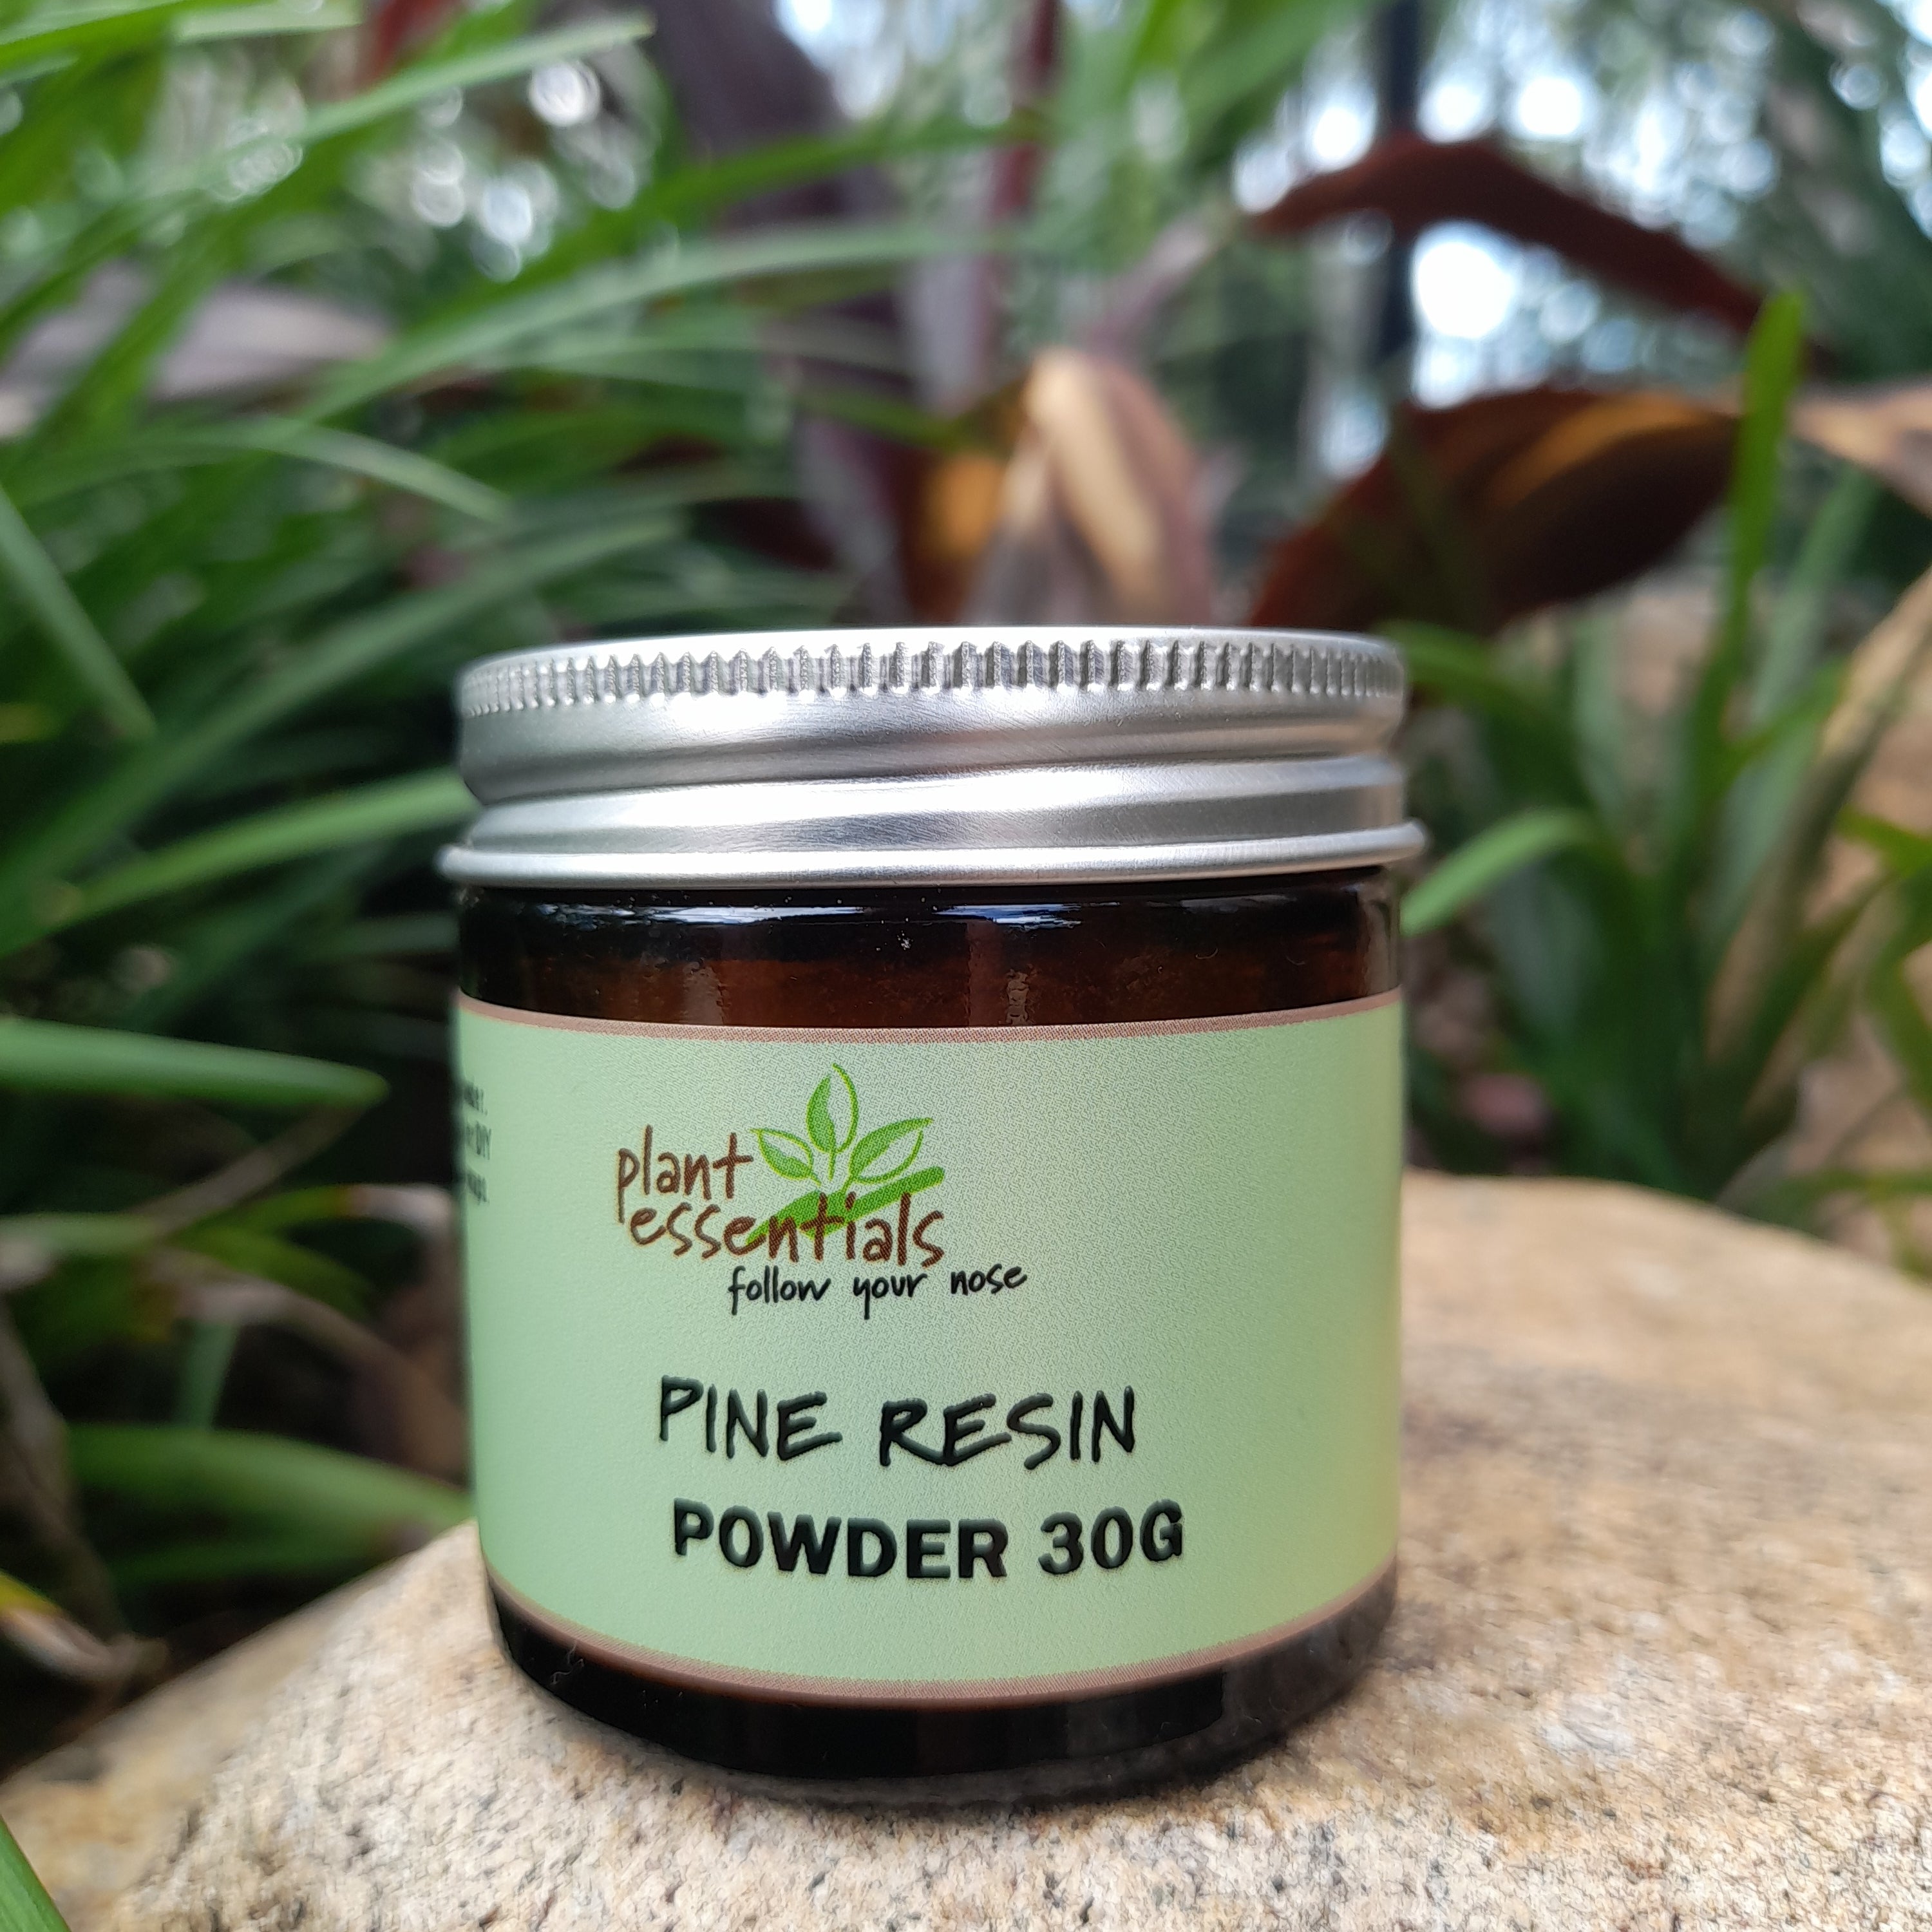 Pine Resin Powder